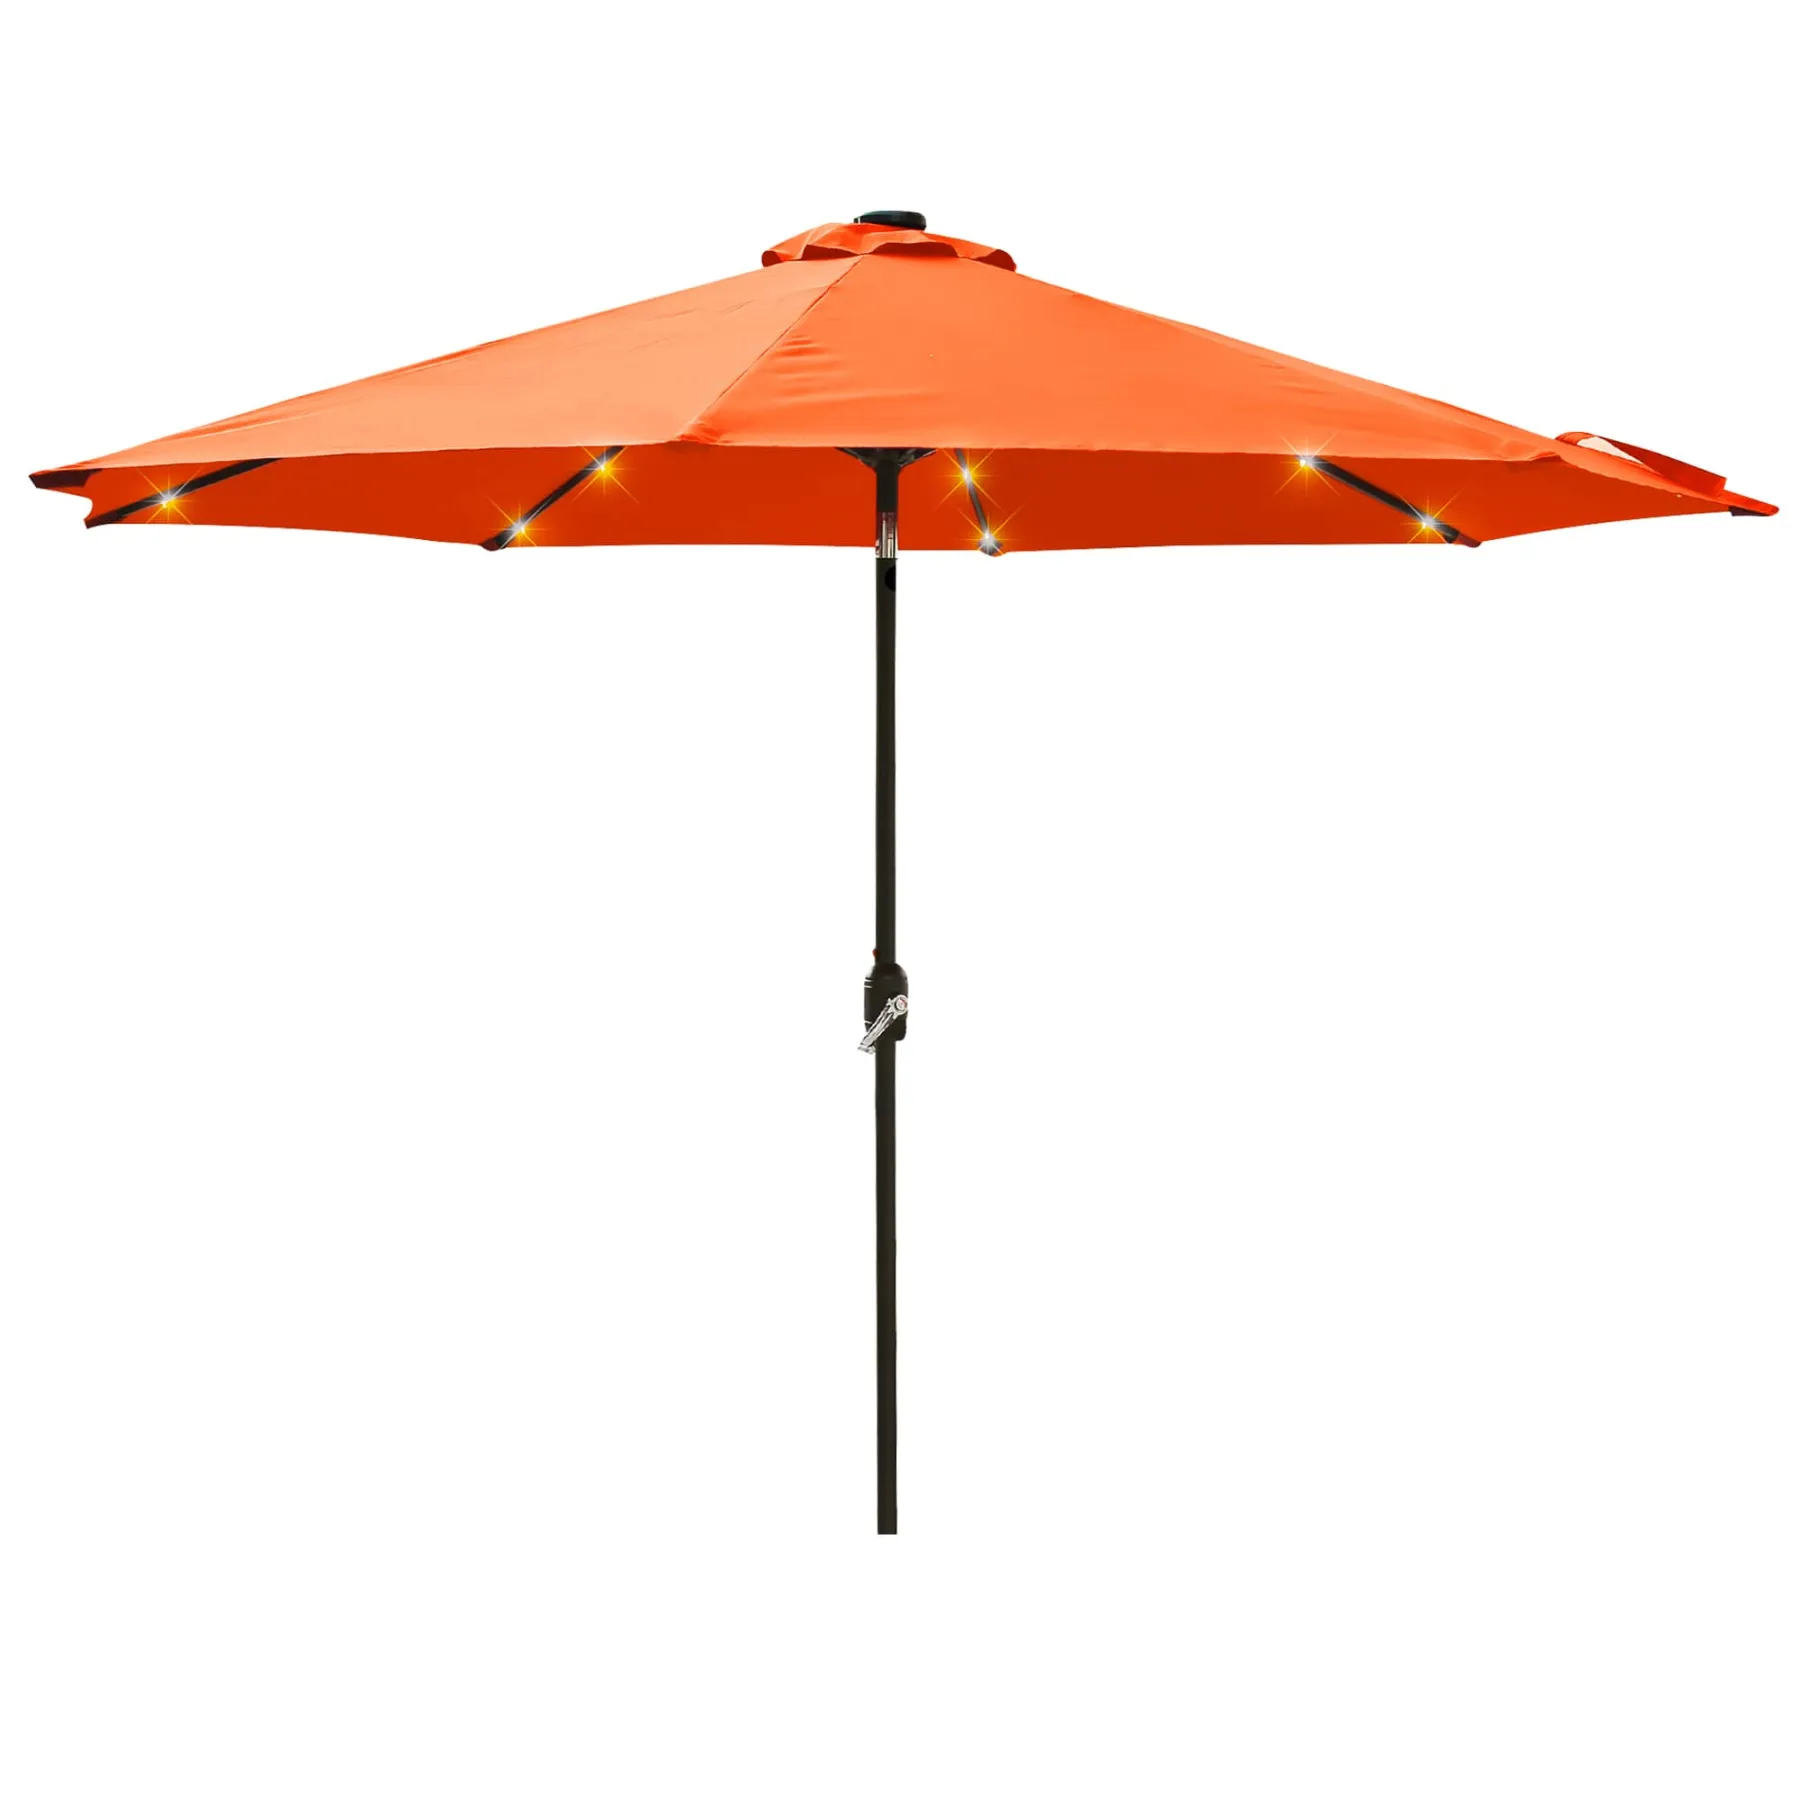 CASAINC 9Ft Patio Umbrella with 32 LED Solar Lights in Orange